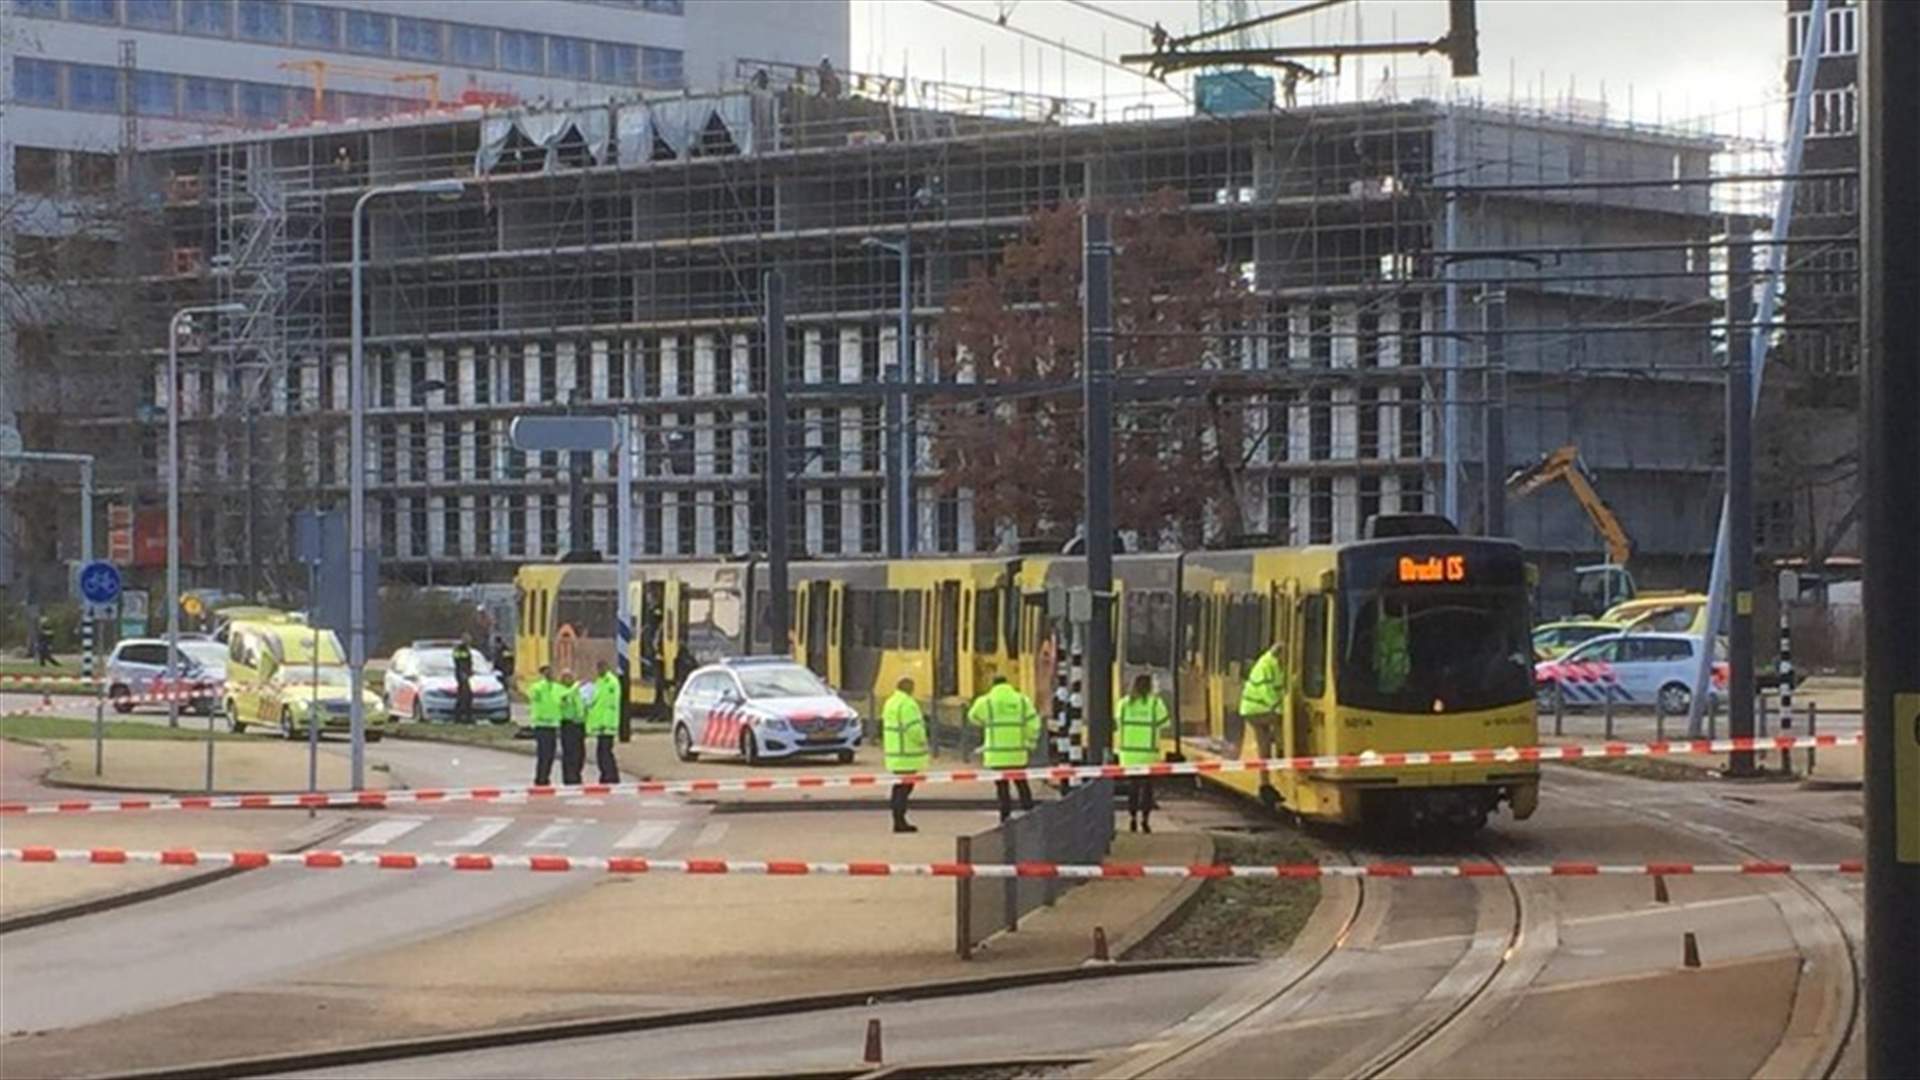 ضحايا في اطلاق نار على &quot;ترامواي&quot; في مدينة أوتريخت الهولندية... والشرطة لا تستبعد فرضية الإرهاب (صور)